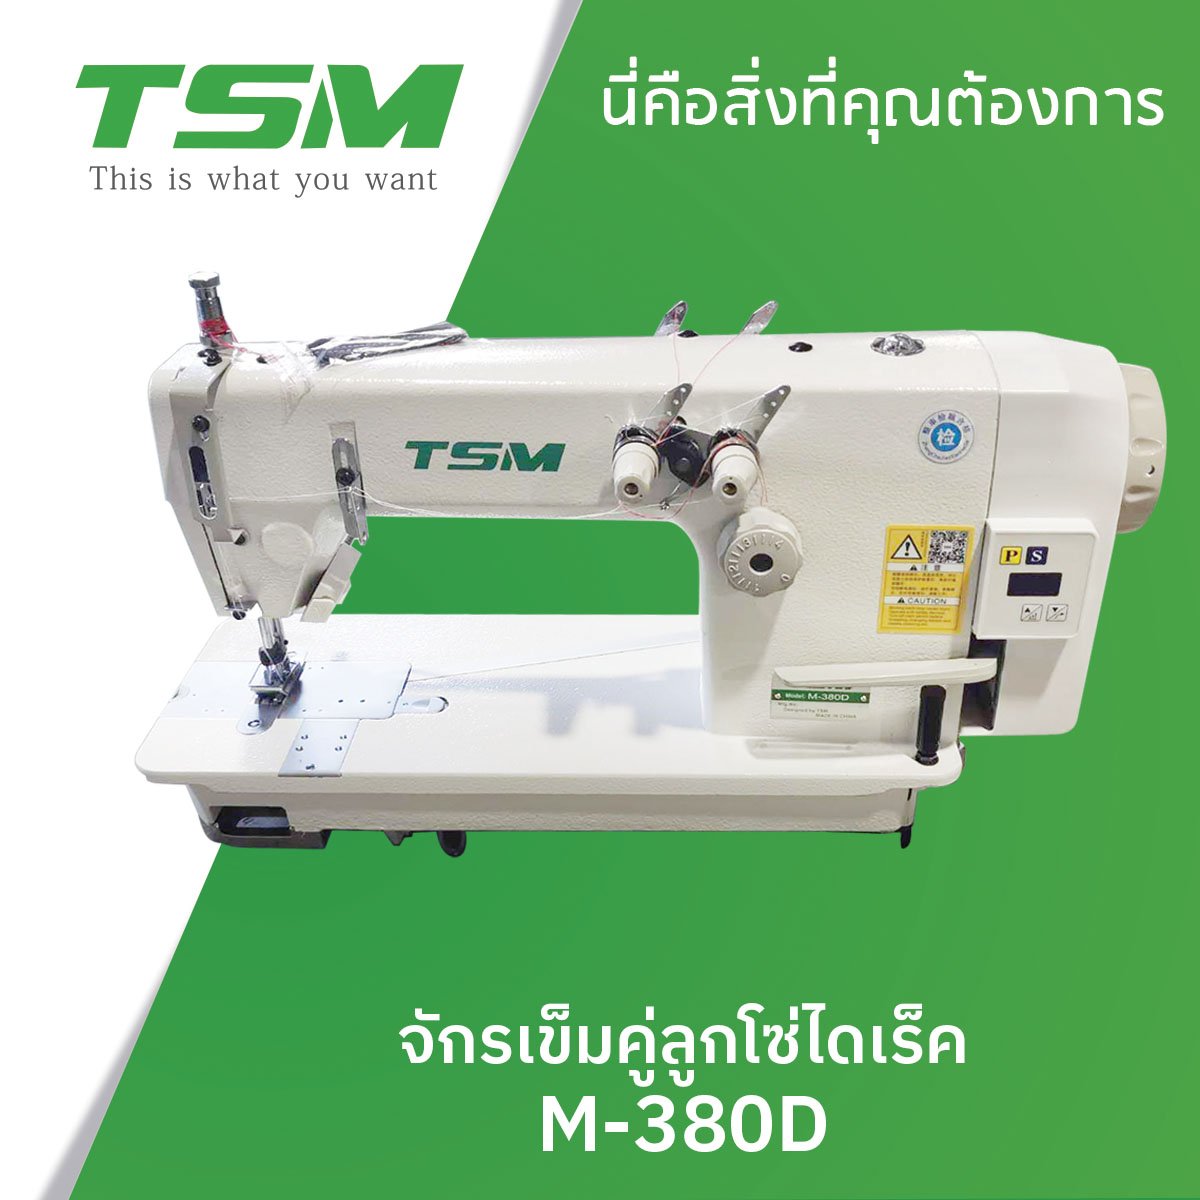 จักรเข็มคู่ลูกโซ่ไดเร็ค TSM รุ่น M-380D